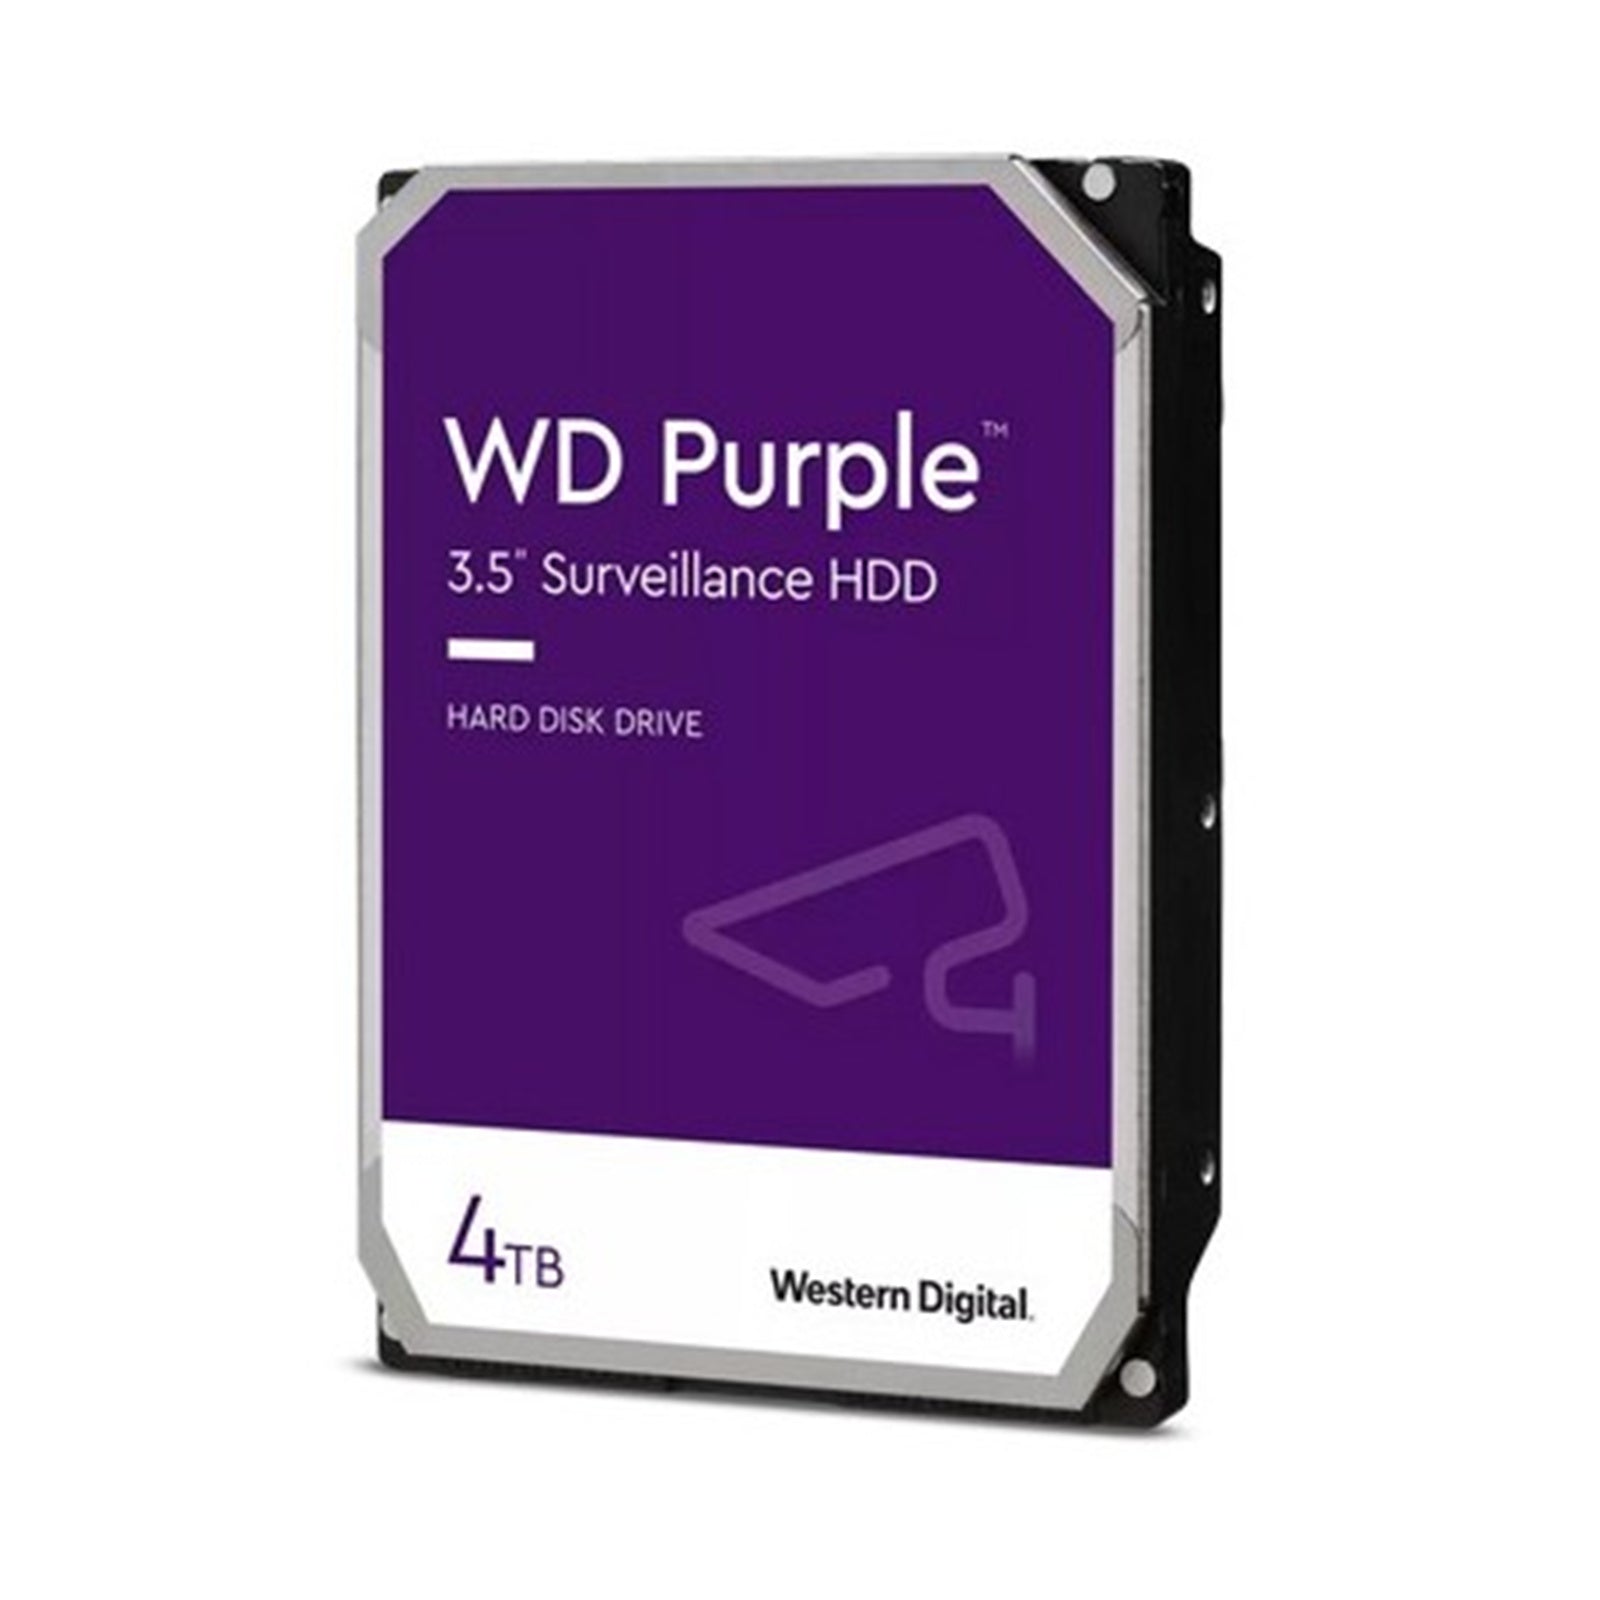 西数紫色监控硬盘4TB 